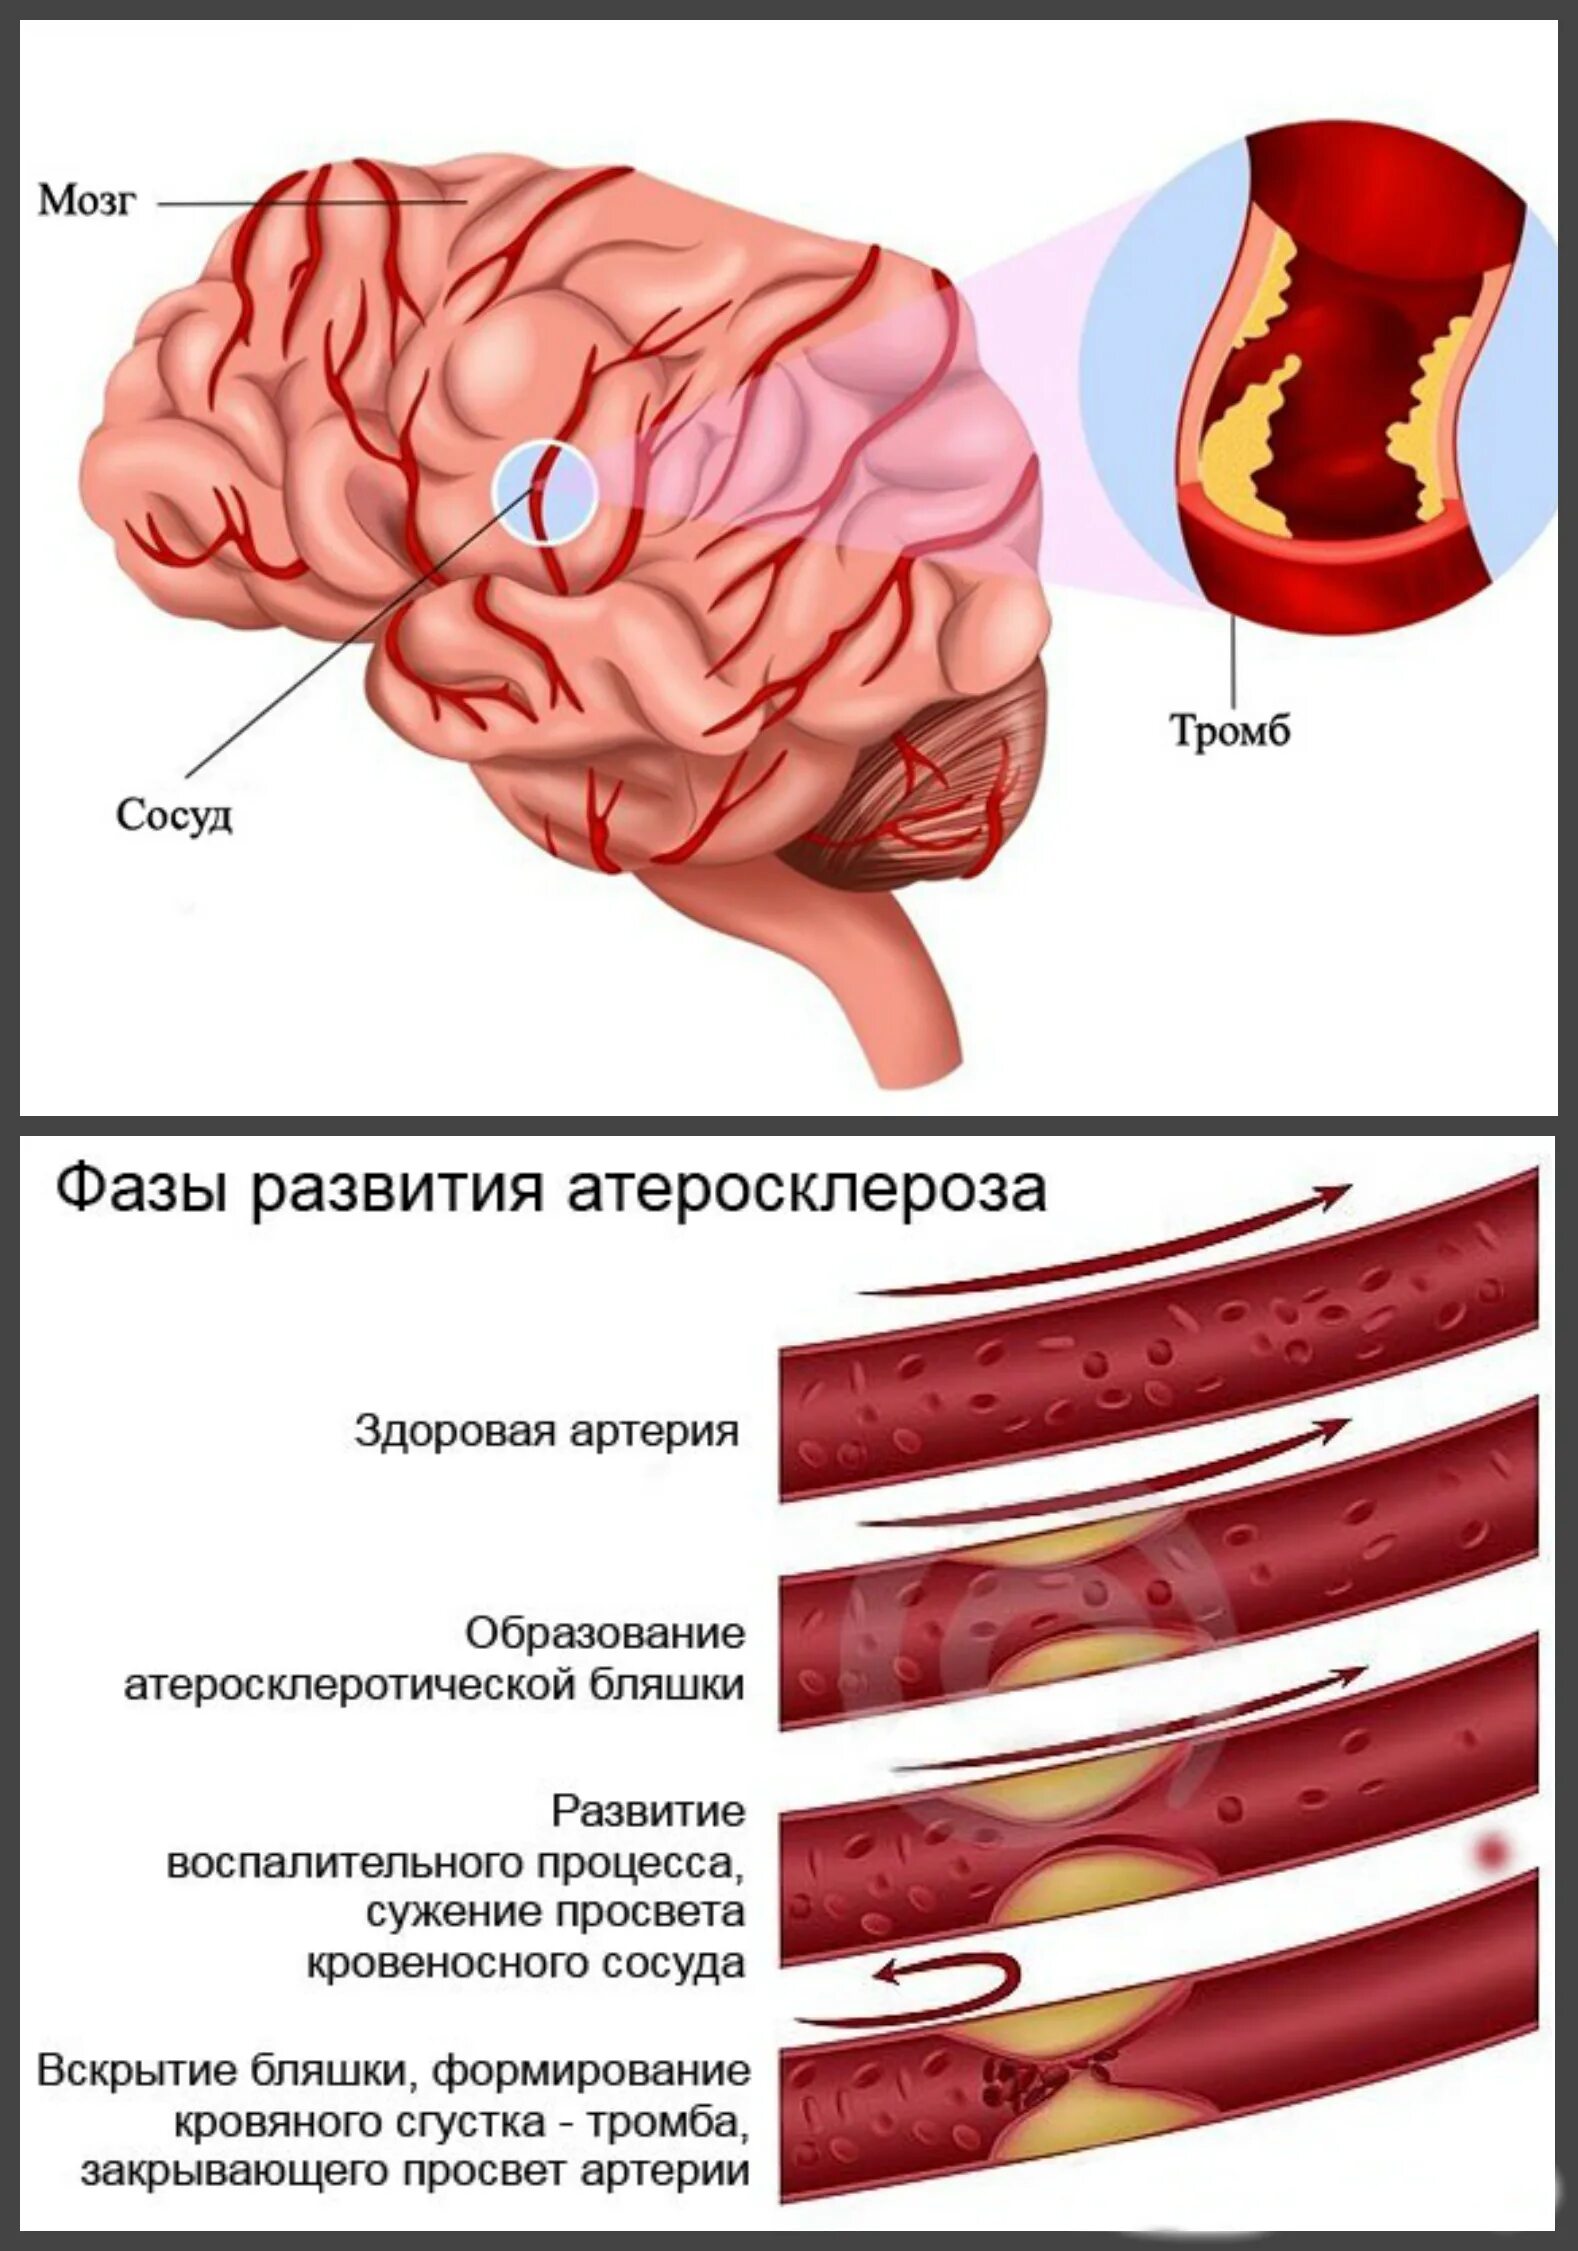 Бляшка в головном мозге. Атеросклероз сосудов головного мозга. Атеросклероз сосудов головы. Атеросклероз артерий головного мозга. Атеросклероз сосудов головы и шеи.